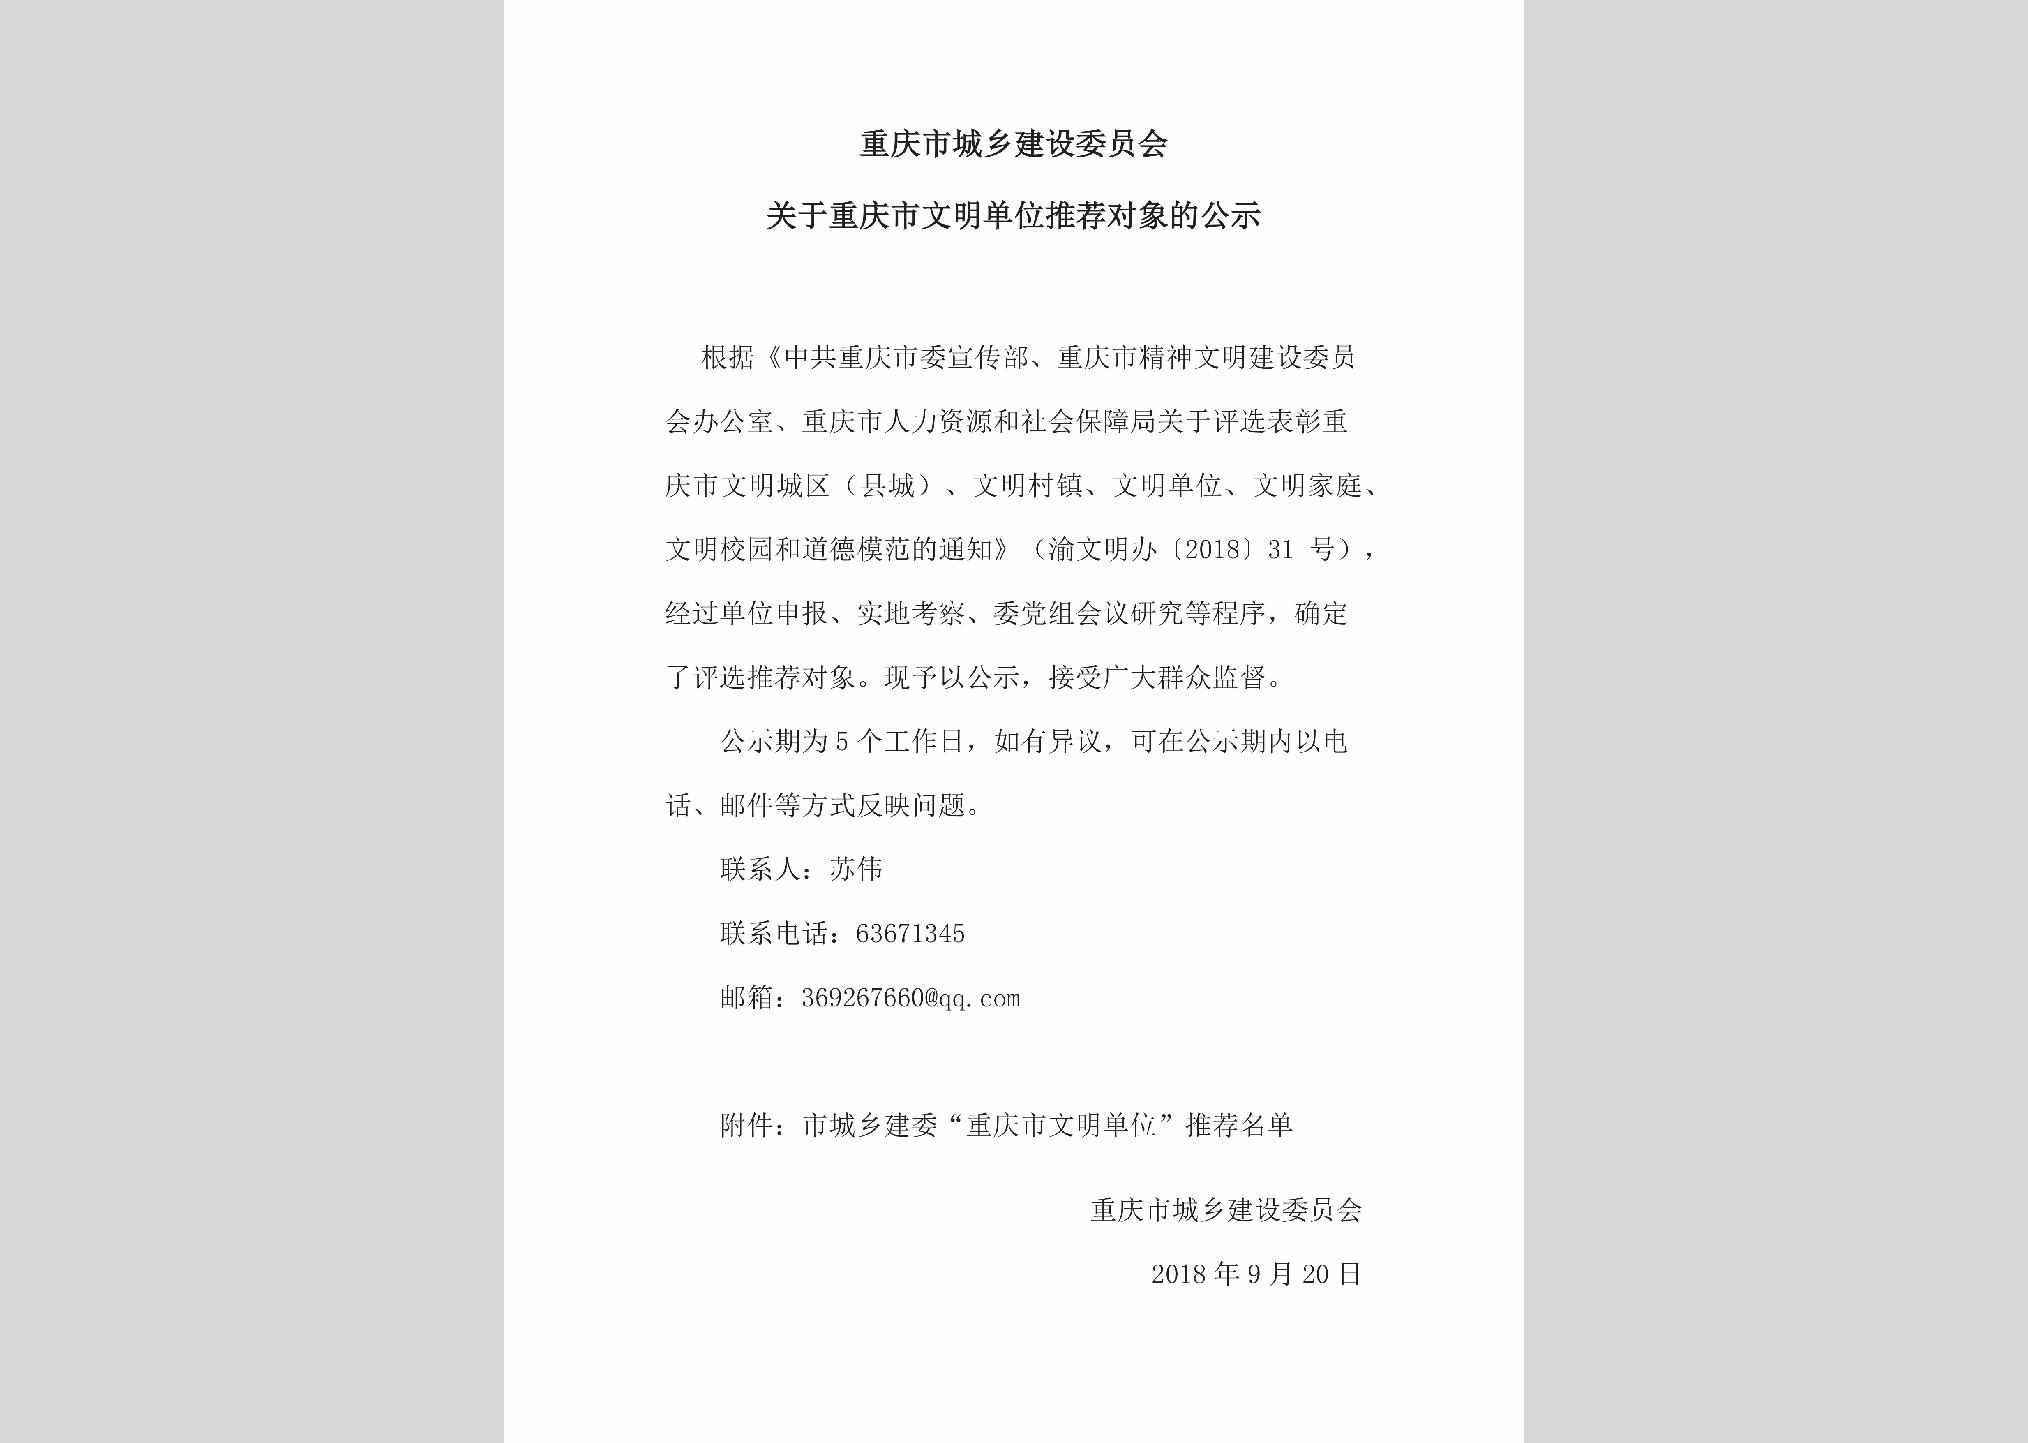 CQ-WMDWTJDX-2018：关于重庆市文明单位推荐对象的公示